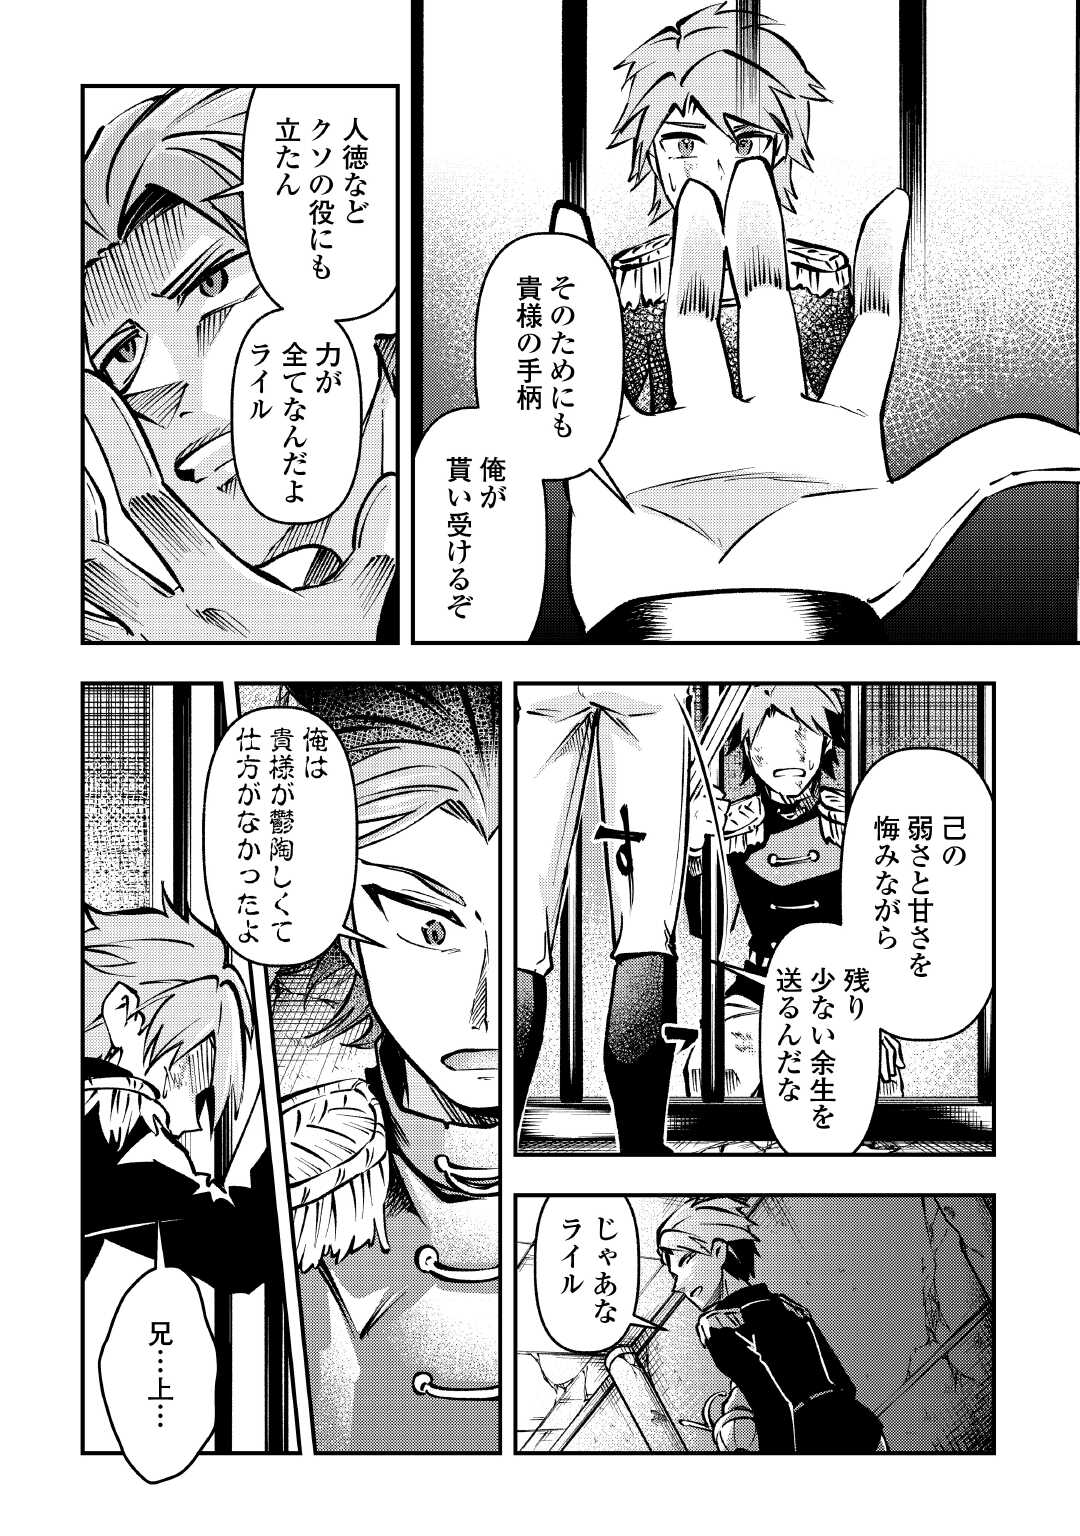 Osanago wa Saikyou no Tamer da to Kizuiteimasen! - Chapter 13 - Page 8